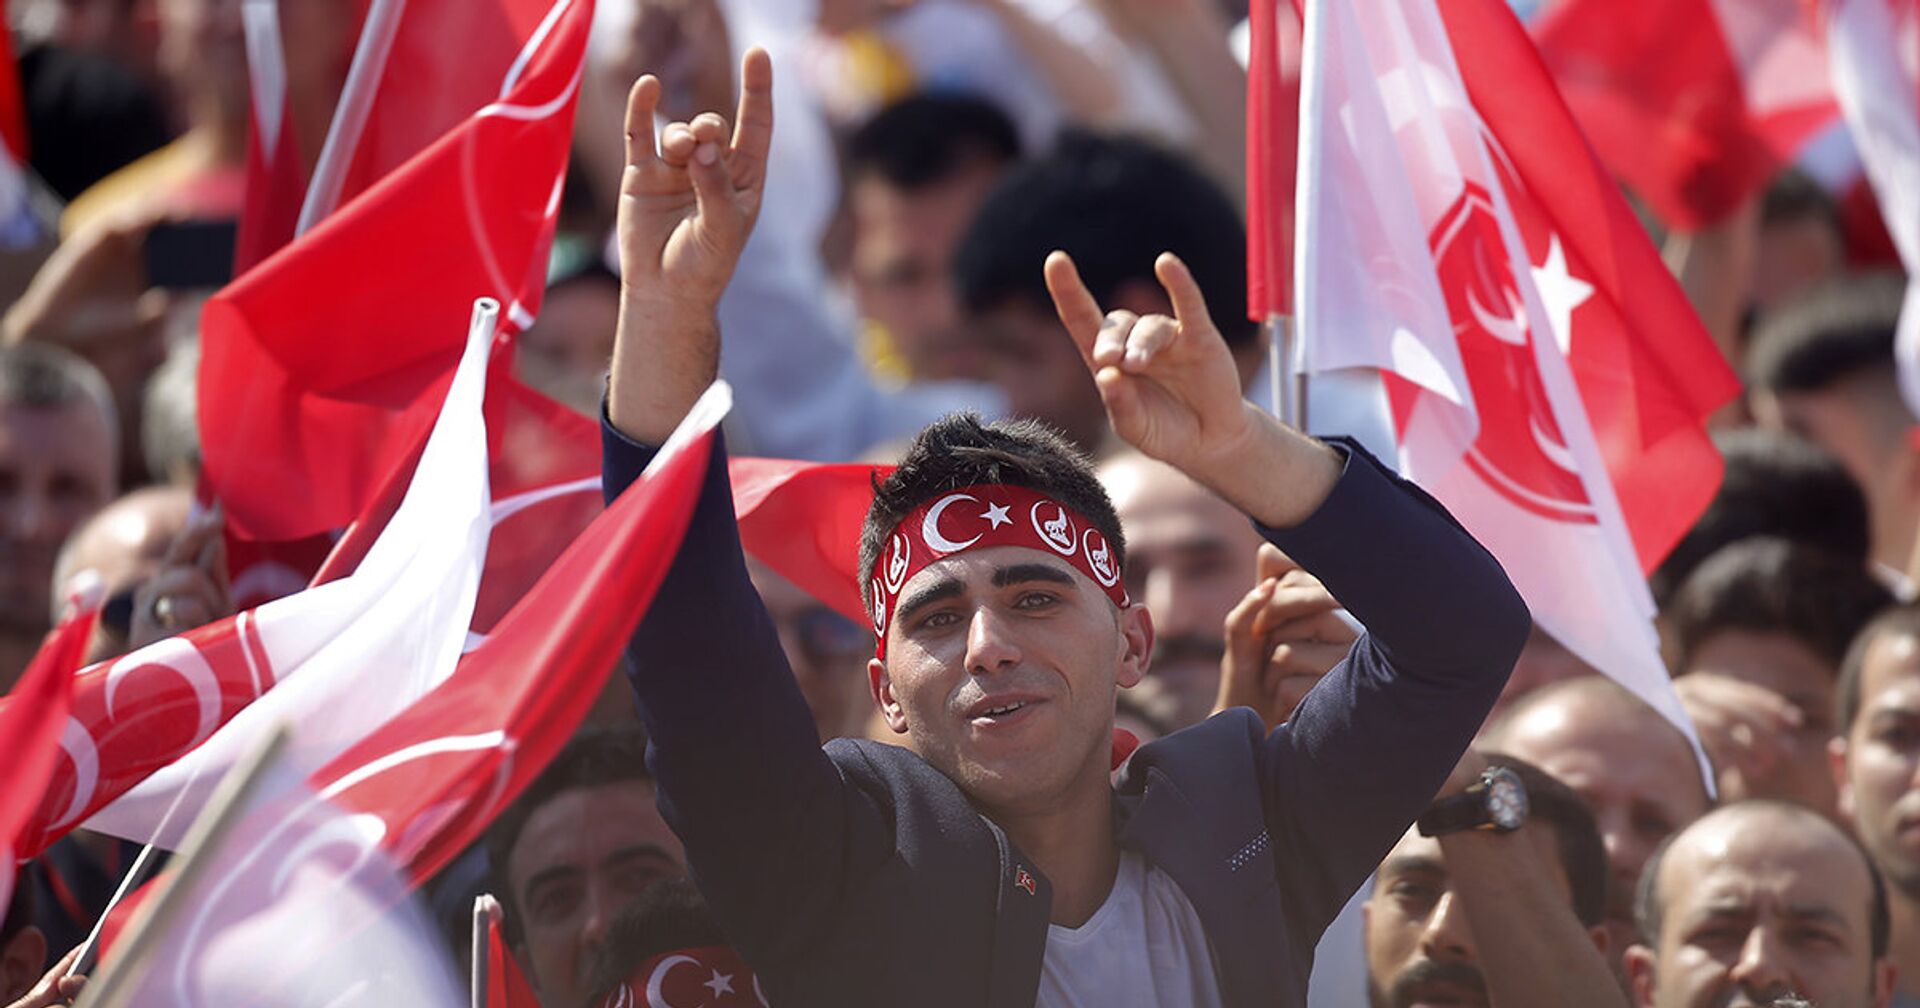 Сторонники турецкой националистической организации «Серые волки» на митинге в Стамбуле, Турция - ИноСМИ, 1920, 13.11.2020